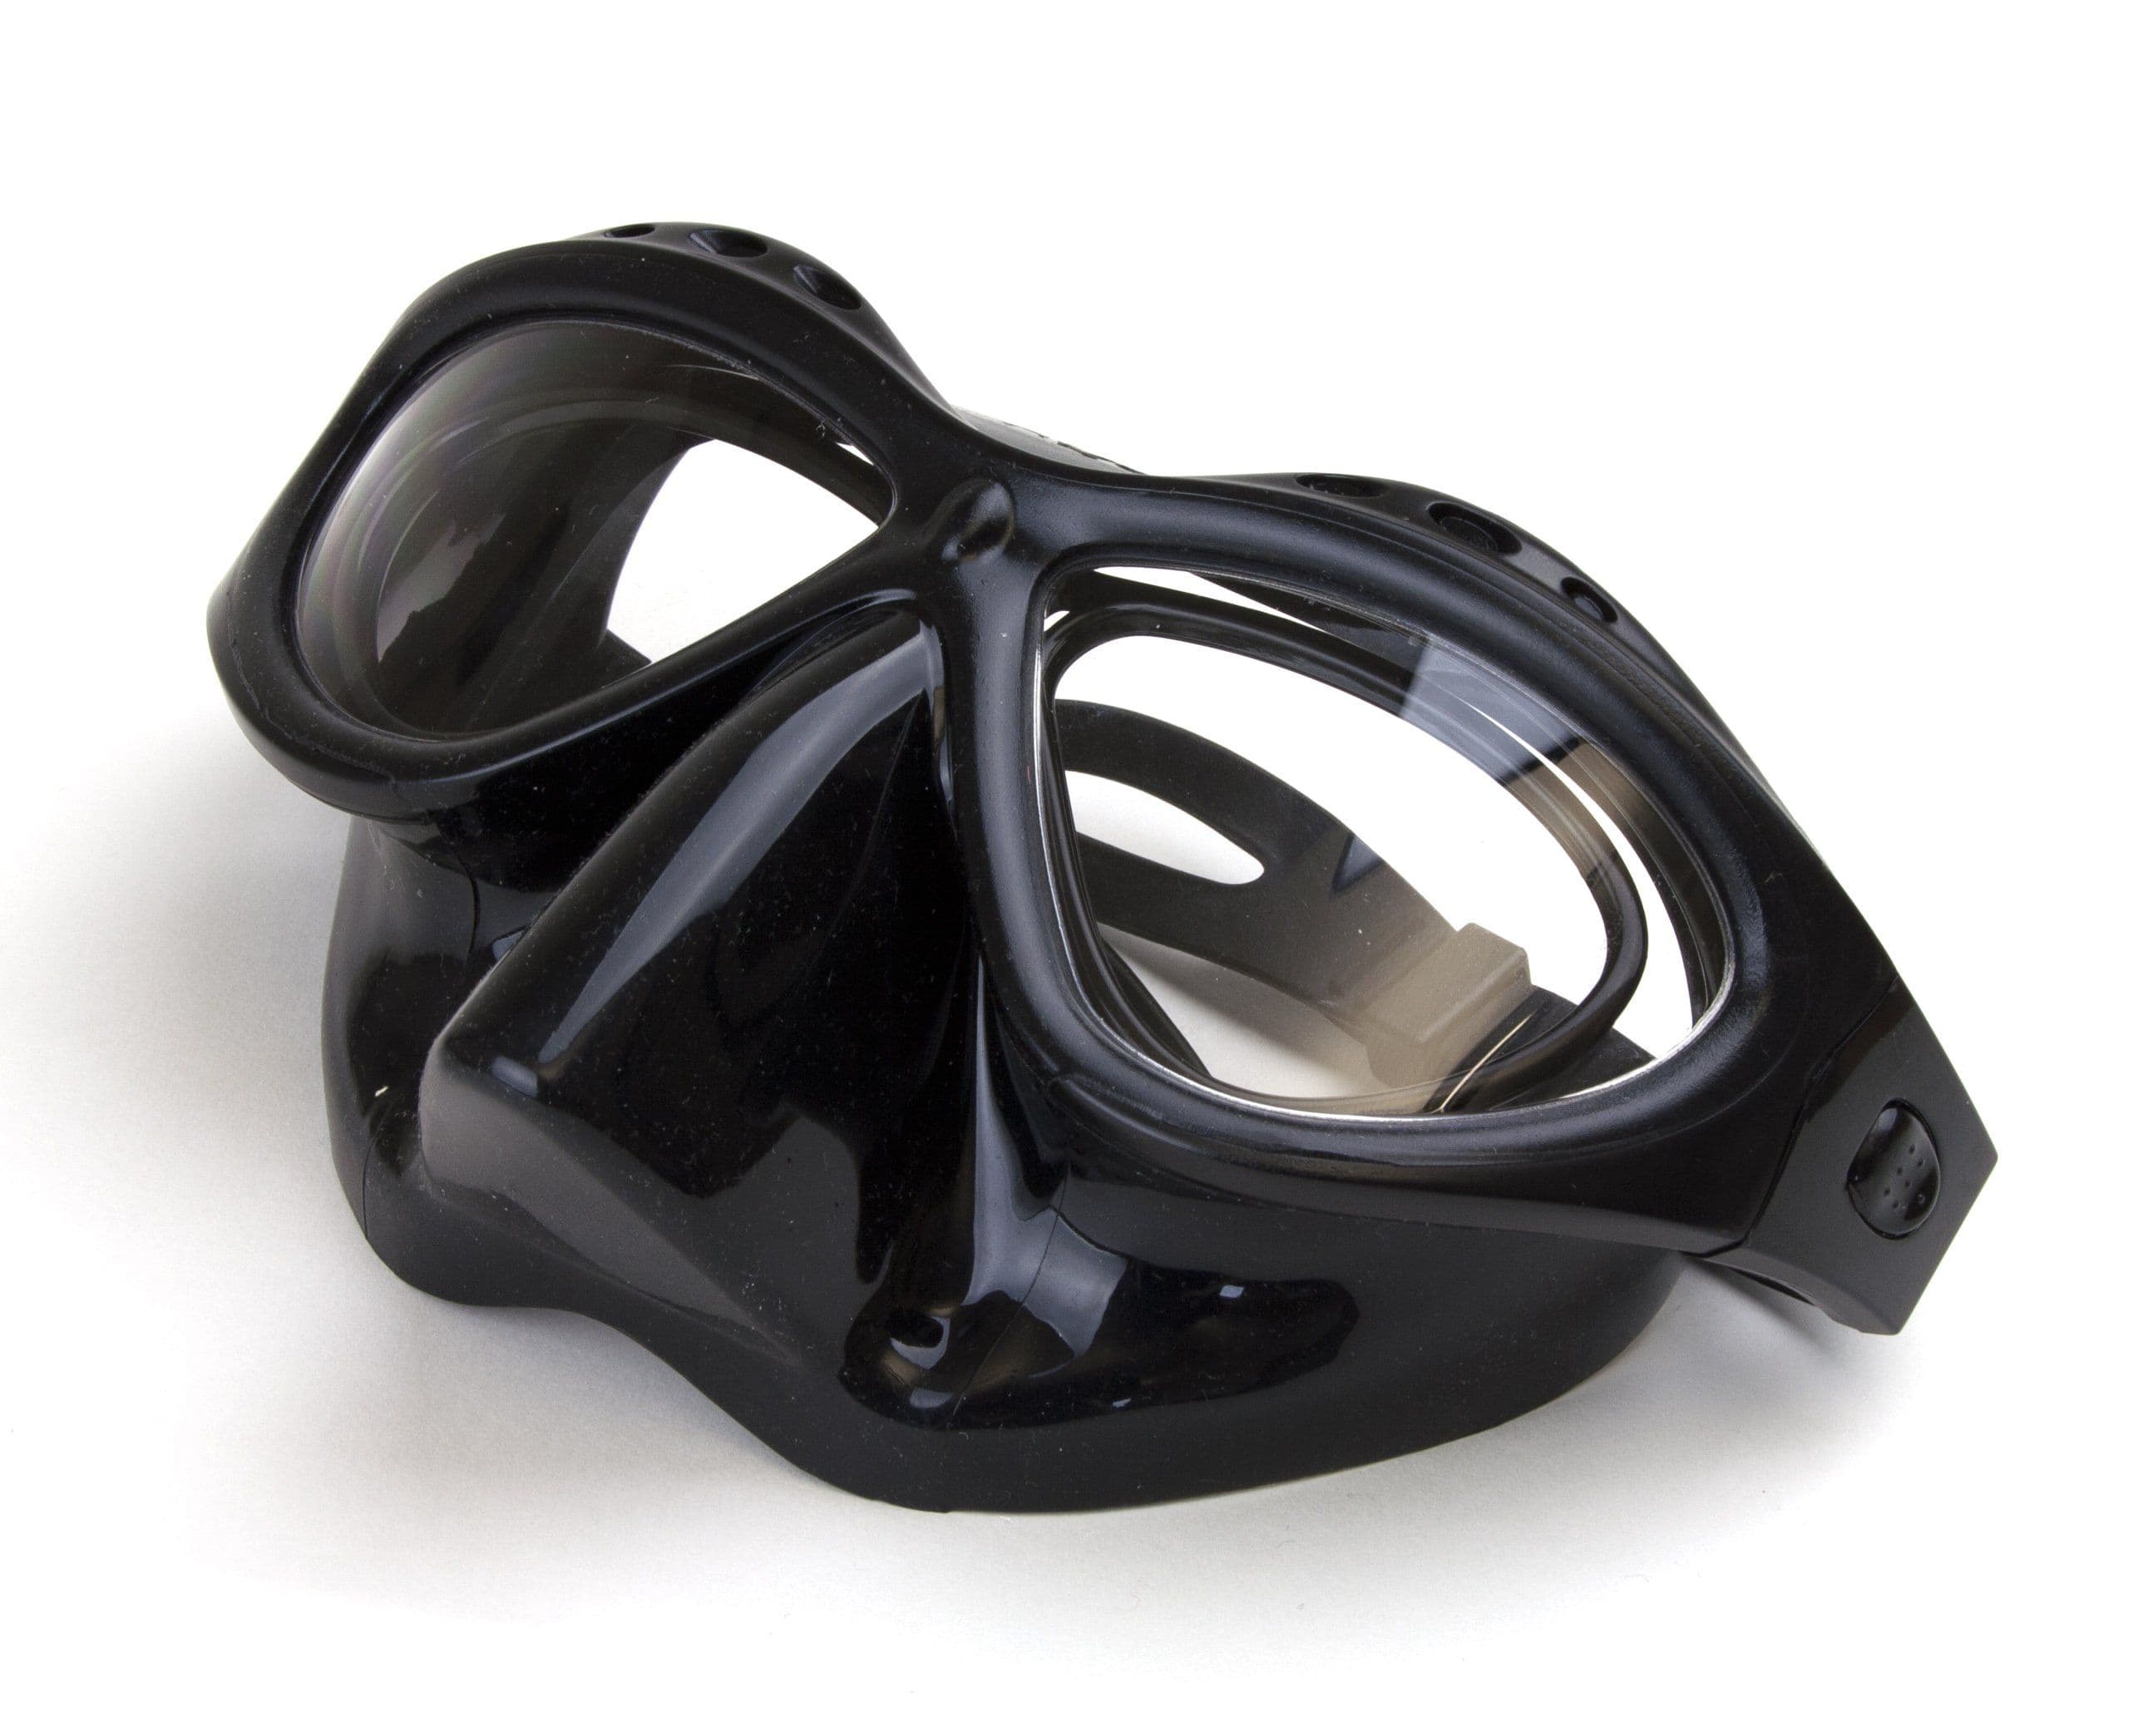 Aquaviz BTS Prescription Snorkel Mask